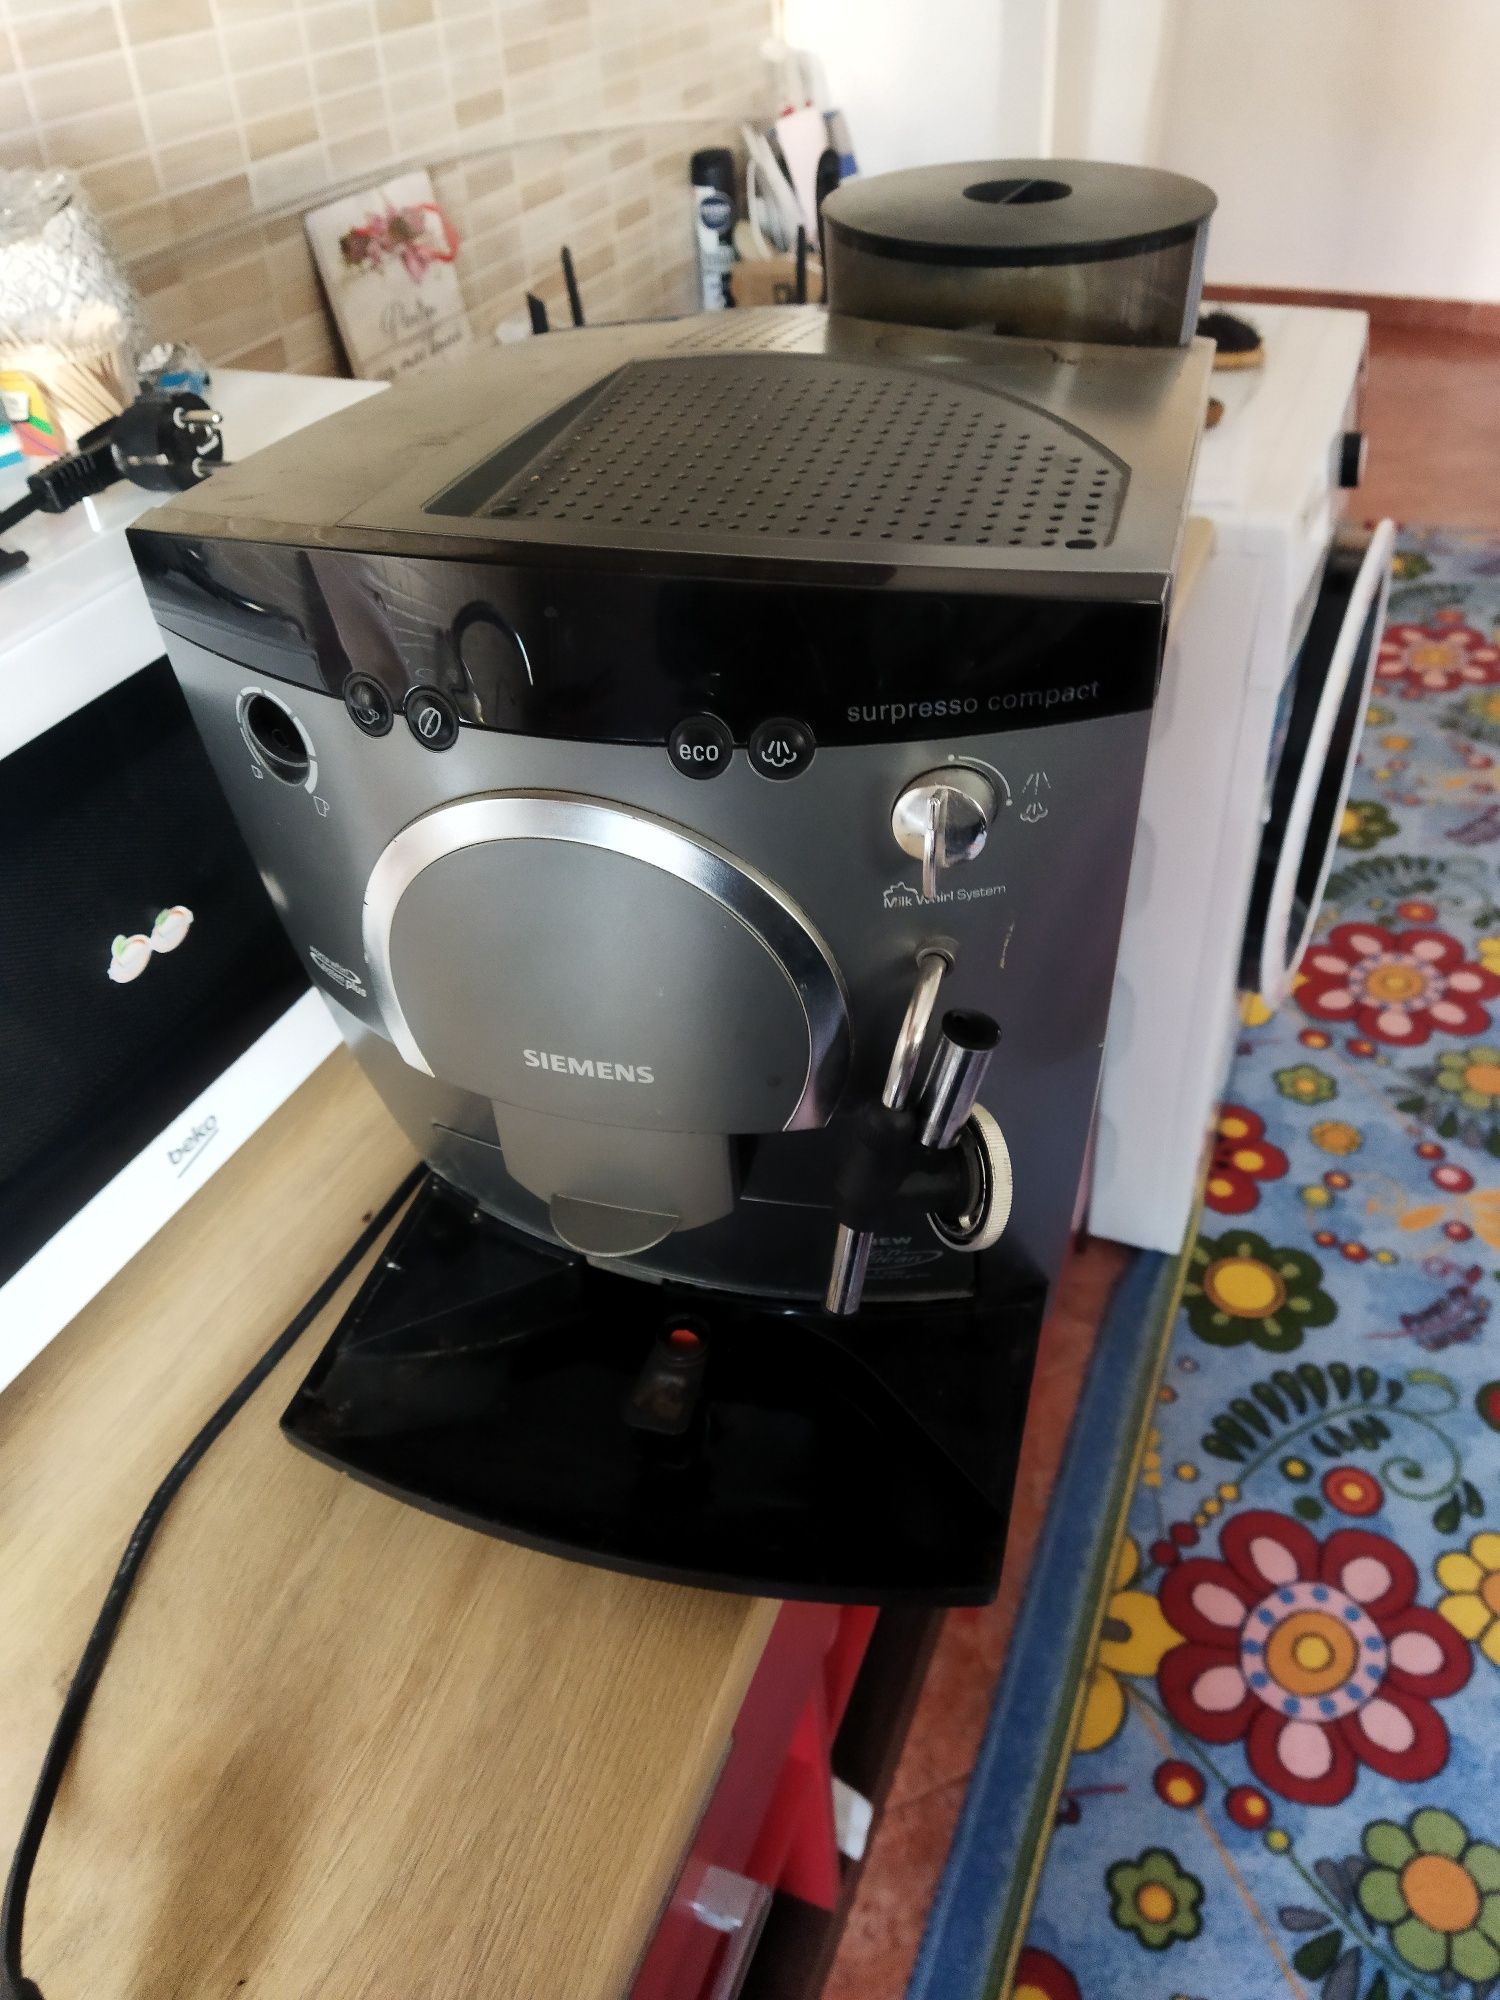 Espresor ziemens surpresso compact